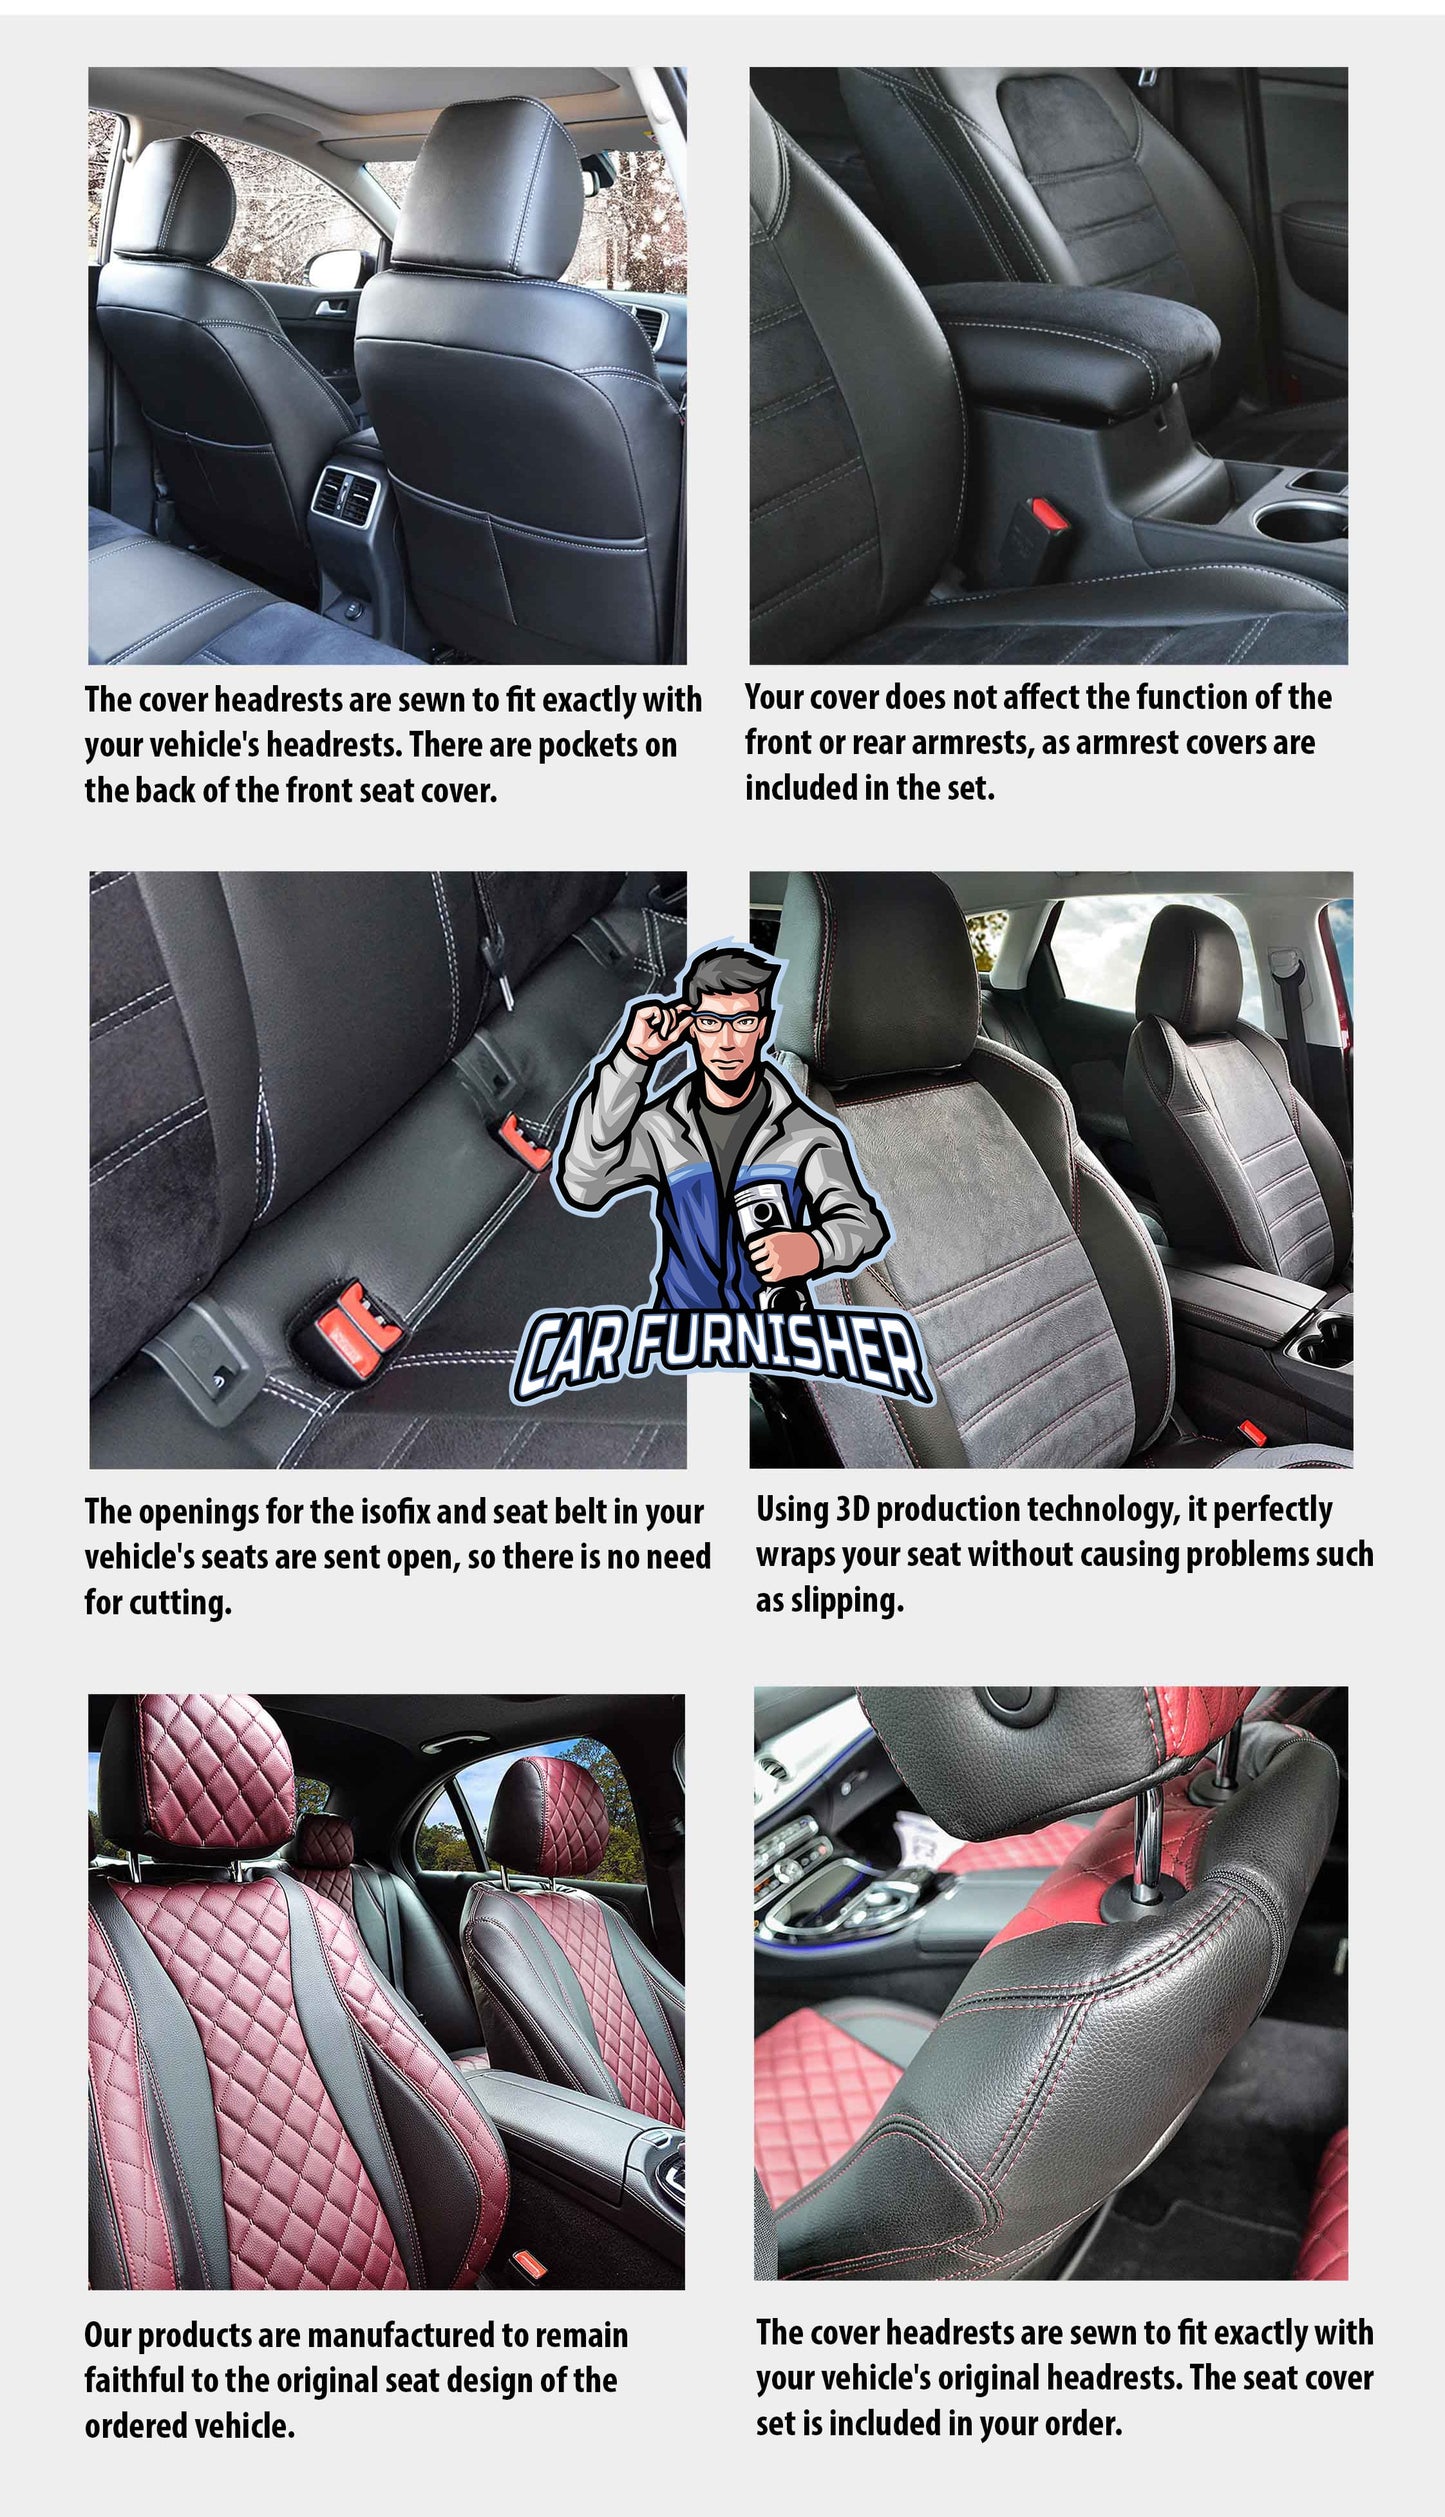 Toyota Auris Seat Cover Original Jacquard Design Smoked Jacquard Fabric